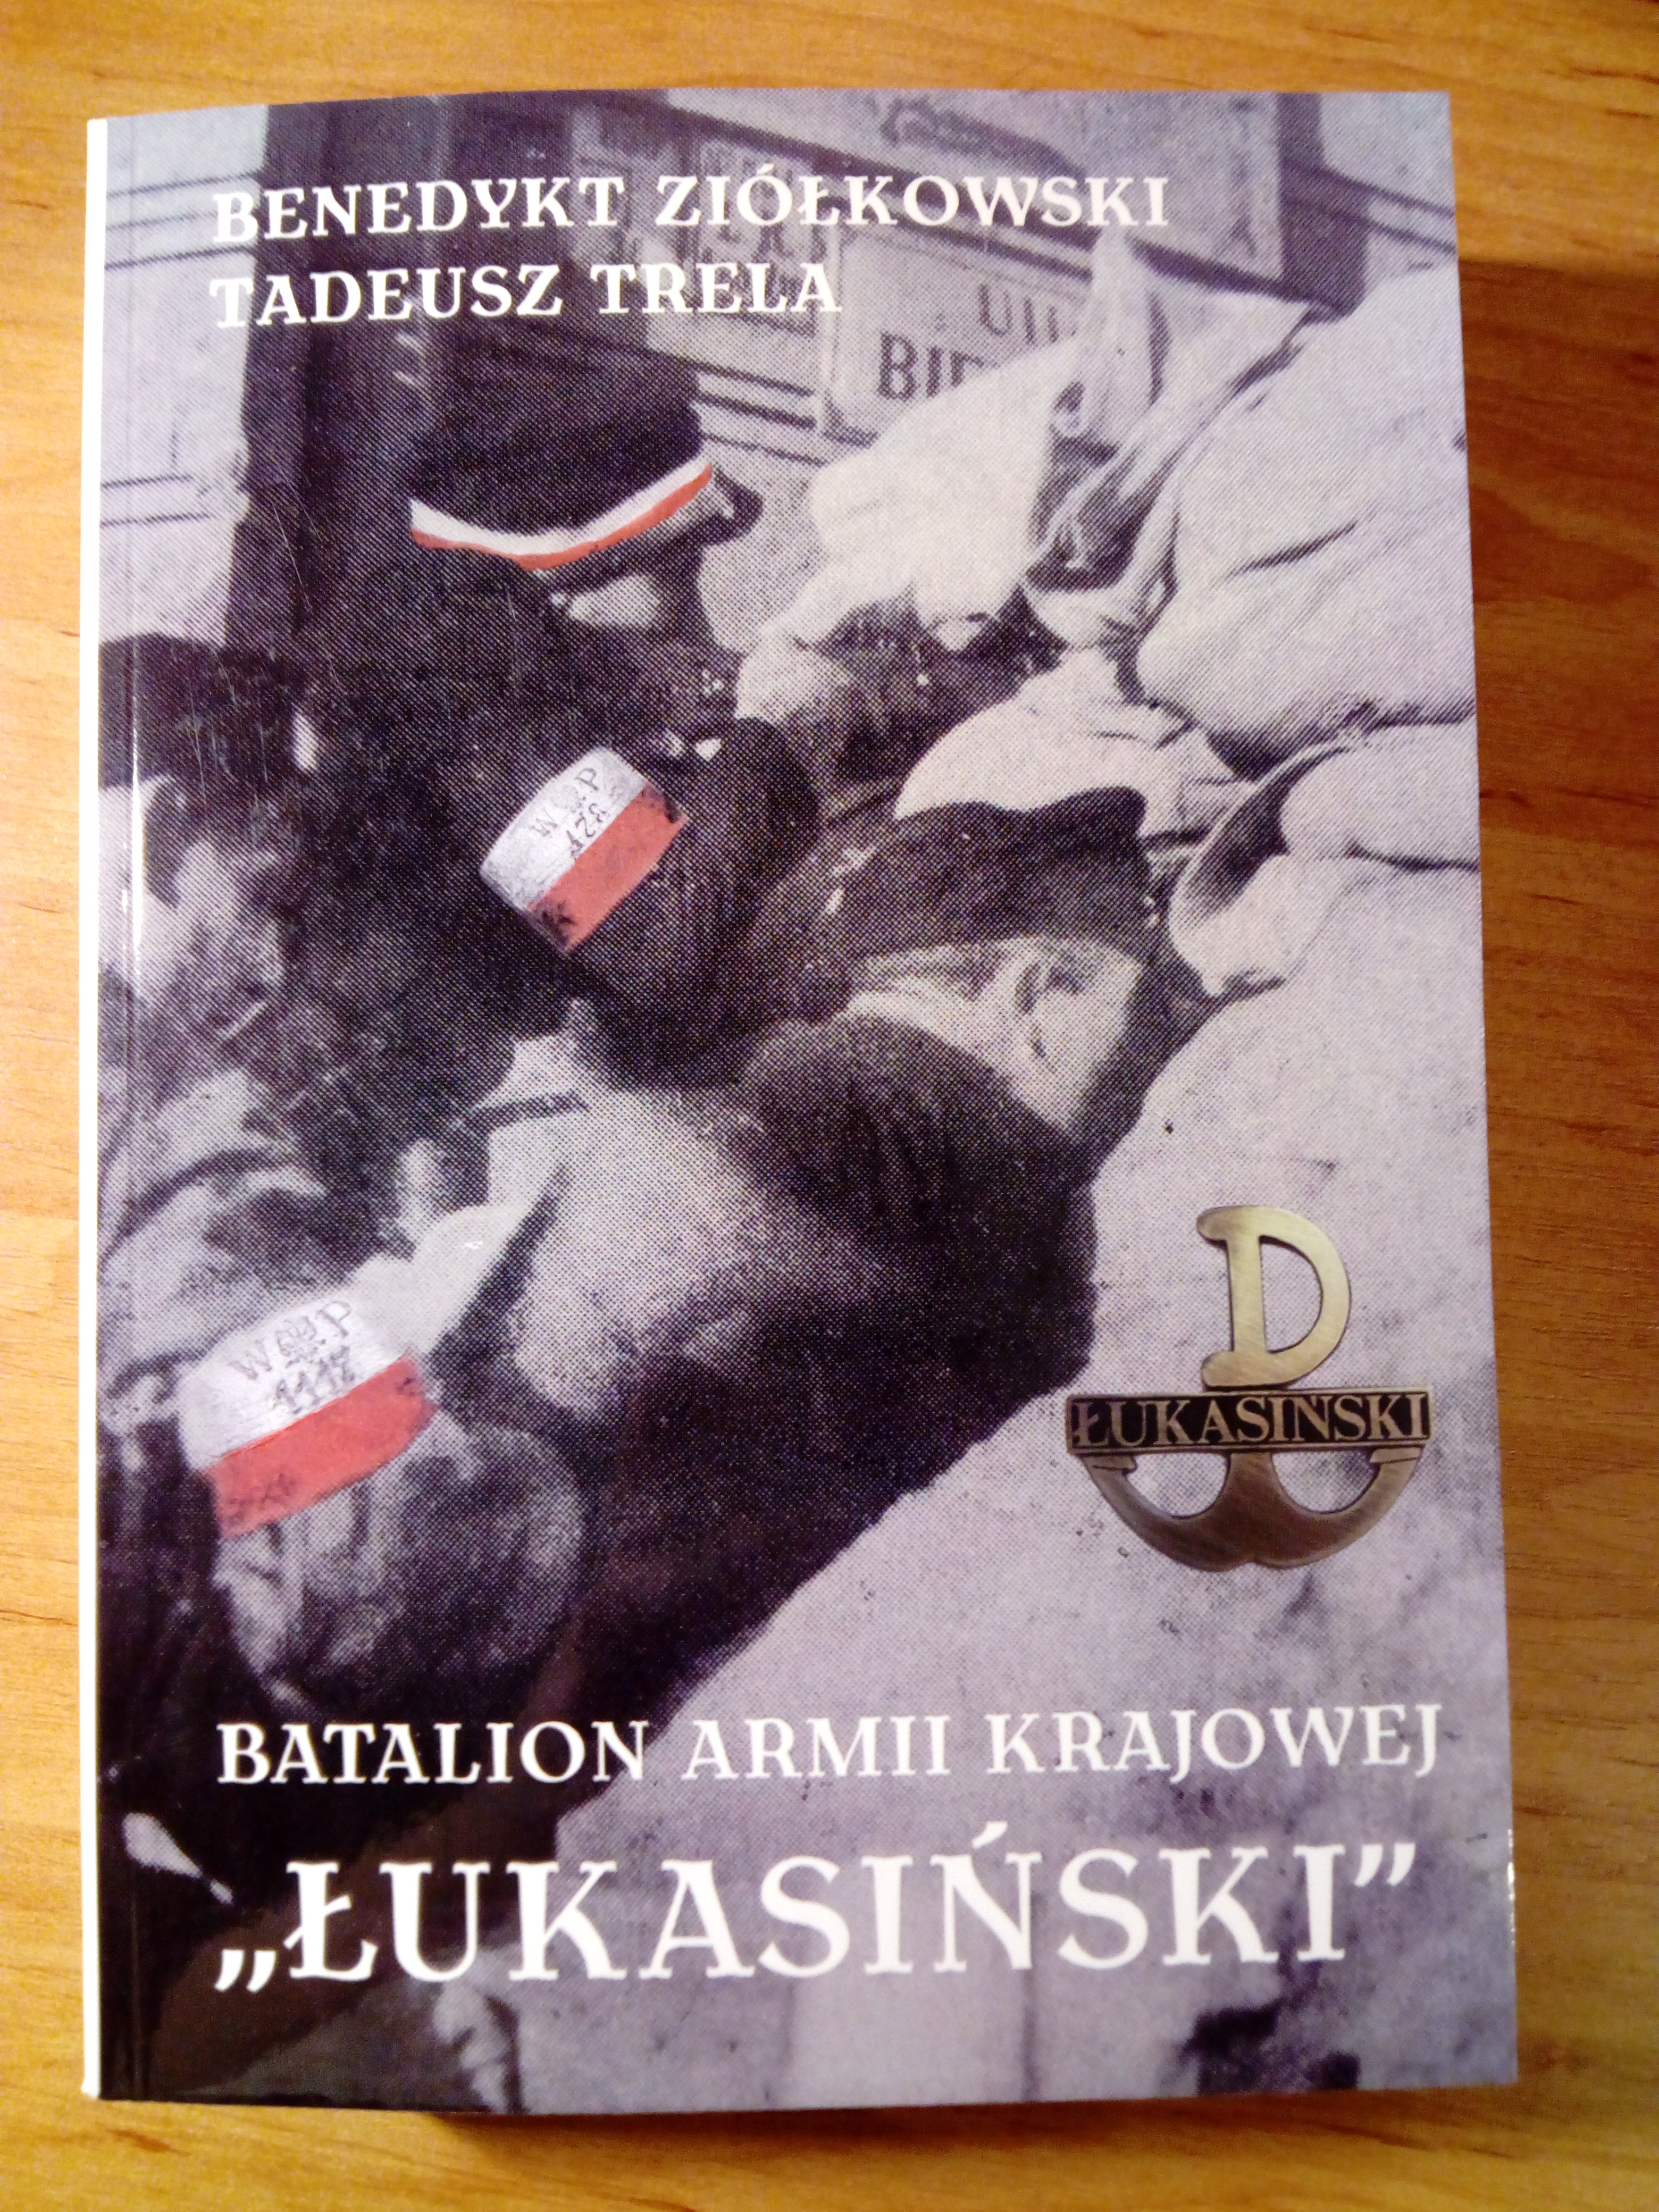 Batalion Armii Krajowej "Łukasiński" twarda (B.Ziółkowski Tadeusz Trela)